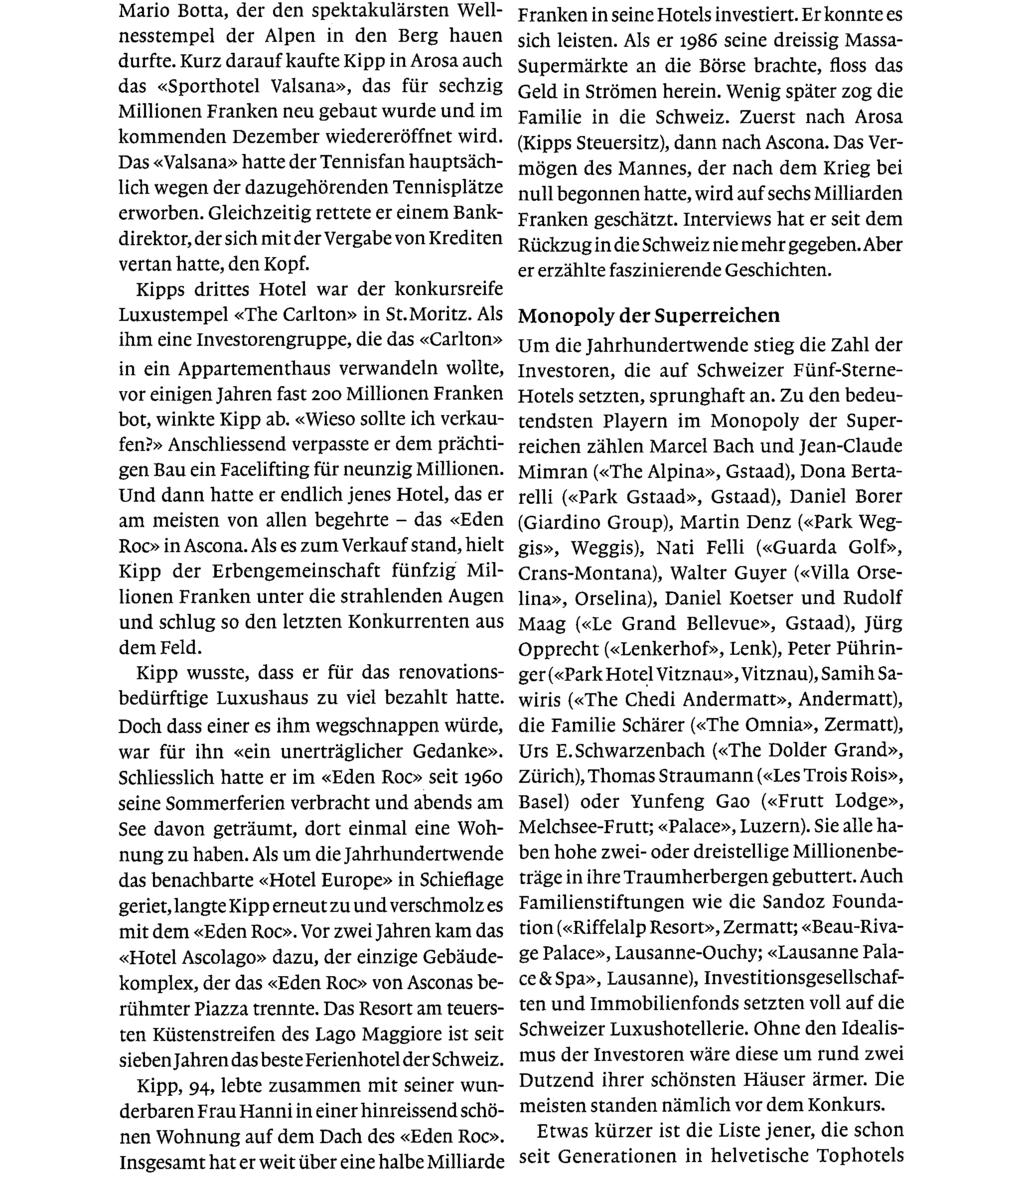 Ausschnitt Seite: 5/17 Mario Botta, der den spektakulärsten Wellnesstempel der Alpen in den Berg hauen durfte.